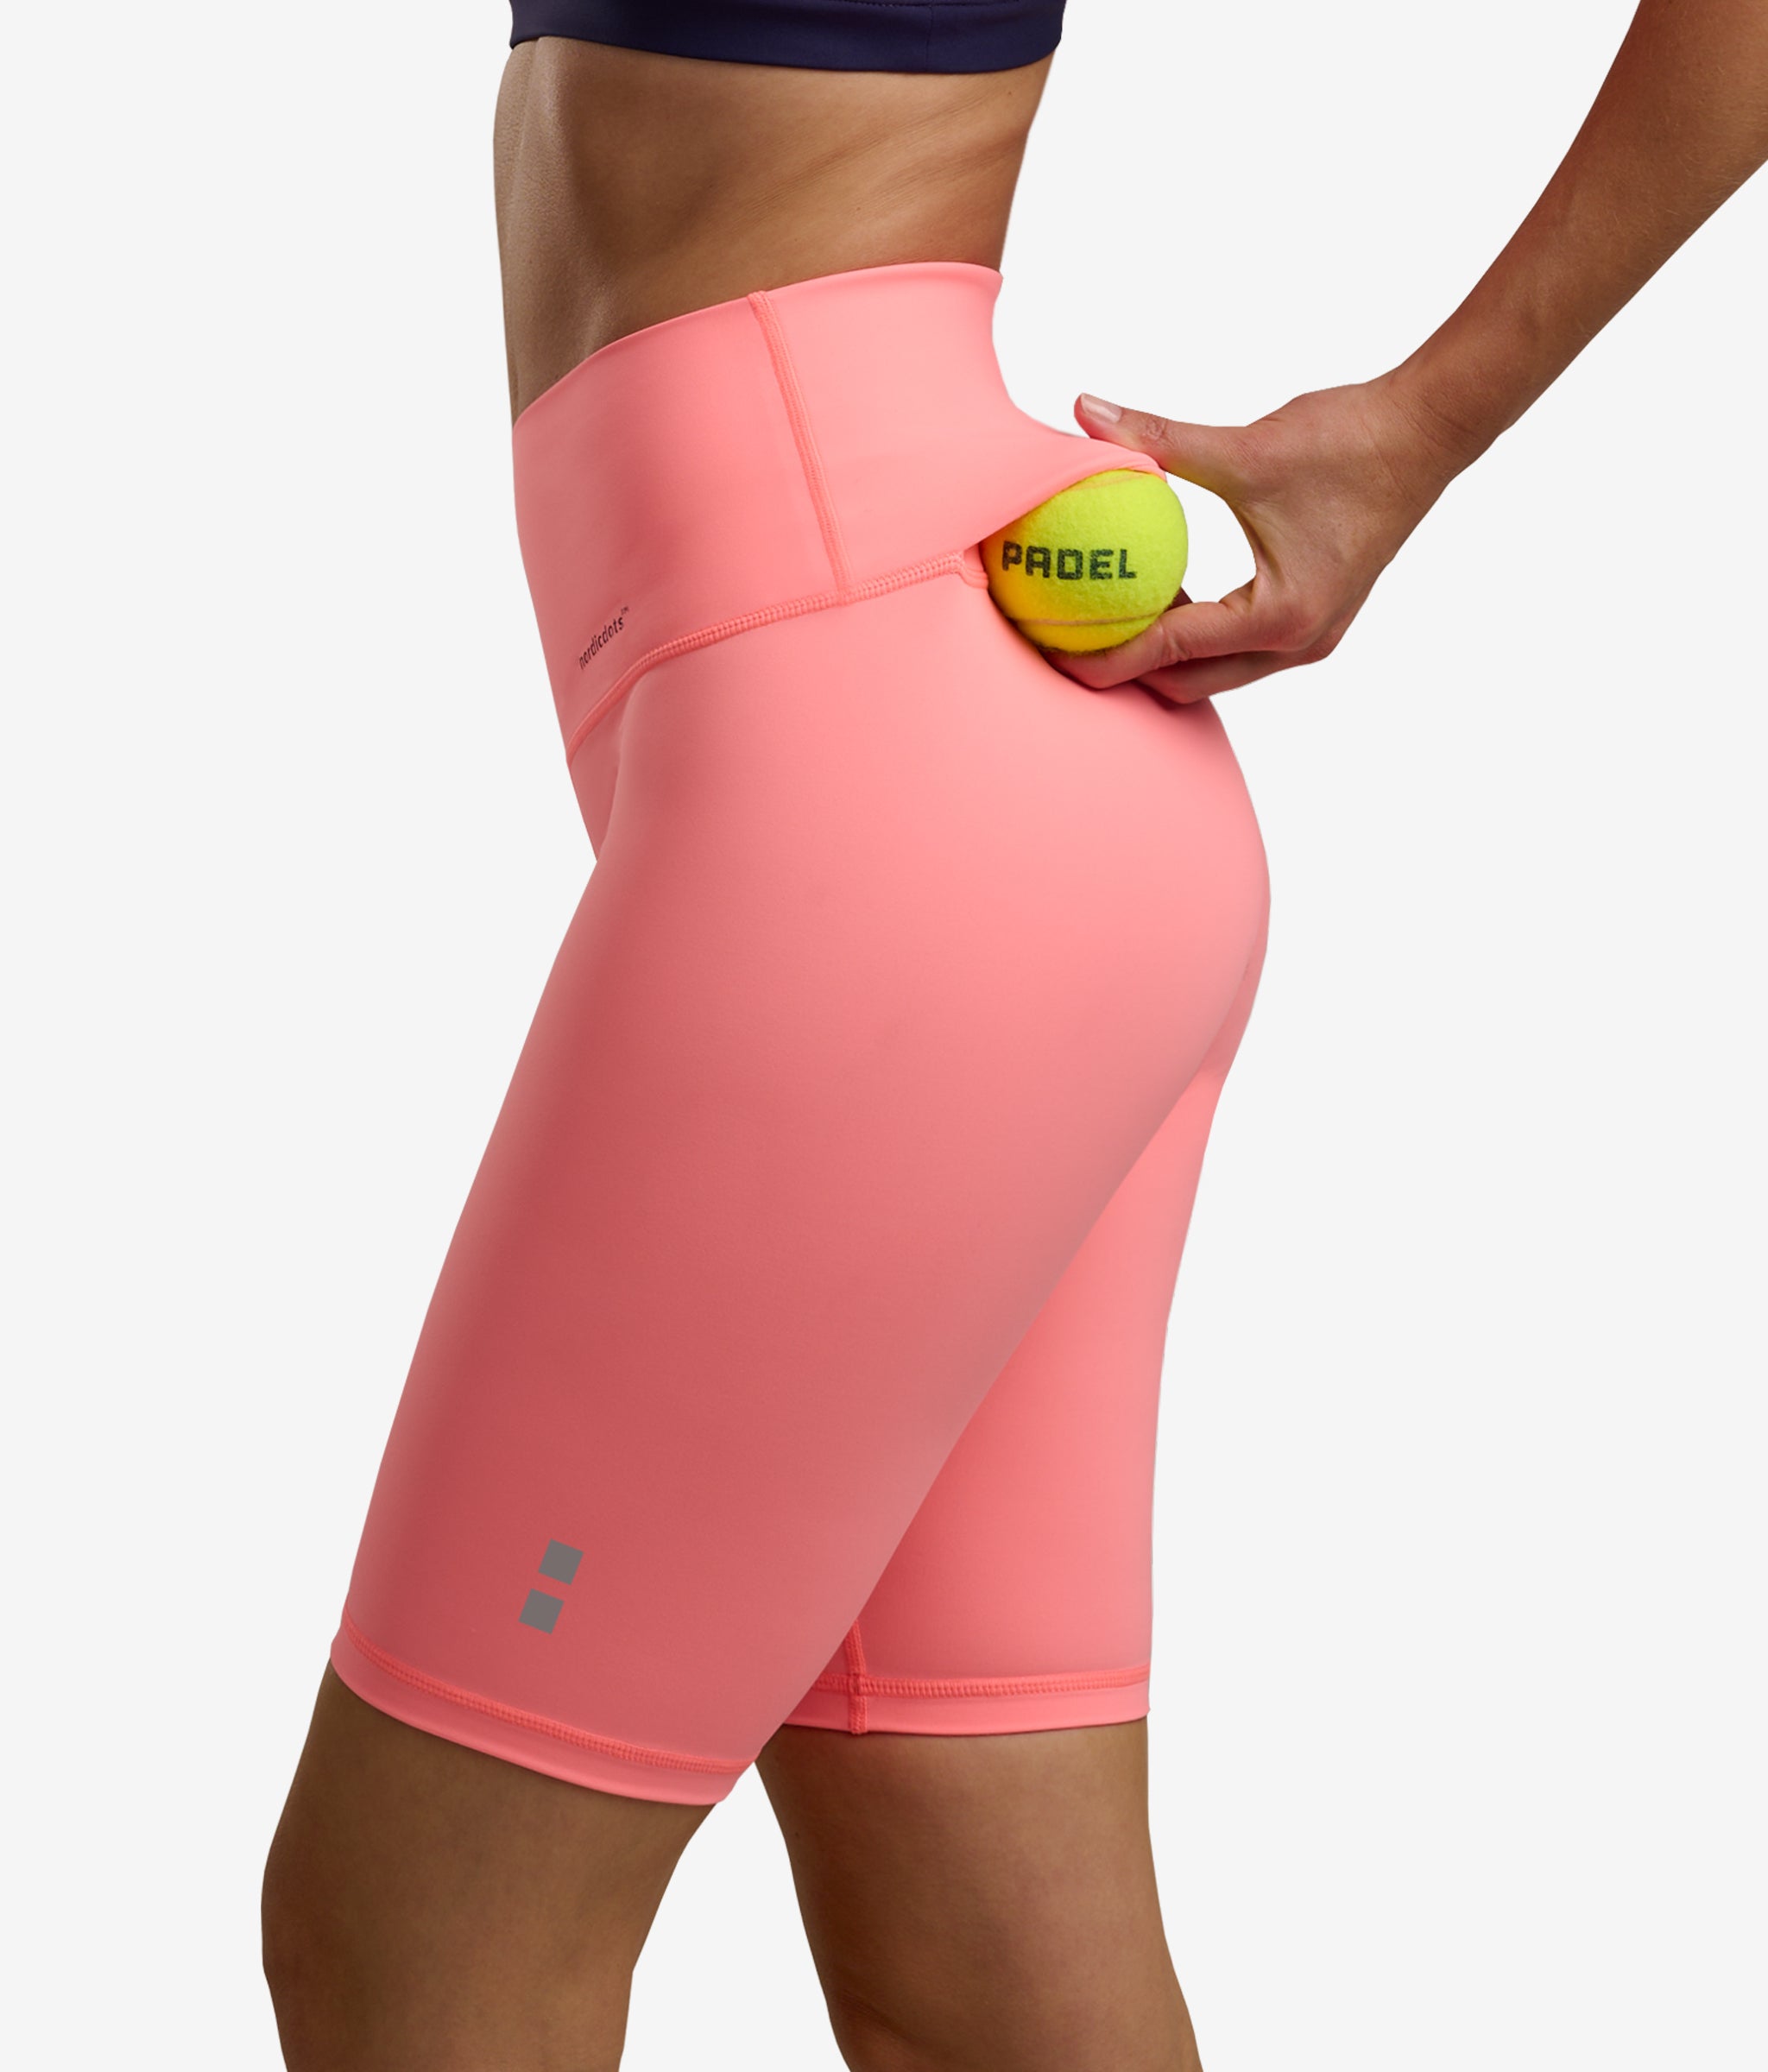 https://nordicdots.com/cdn/shop/files/smart-bikers-melon-nordicdots-W-SBK-MLN-women-tennis-padel-golf-pickleball-nordicdots.com-1.jpg?v=1706403782&width=2048